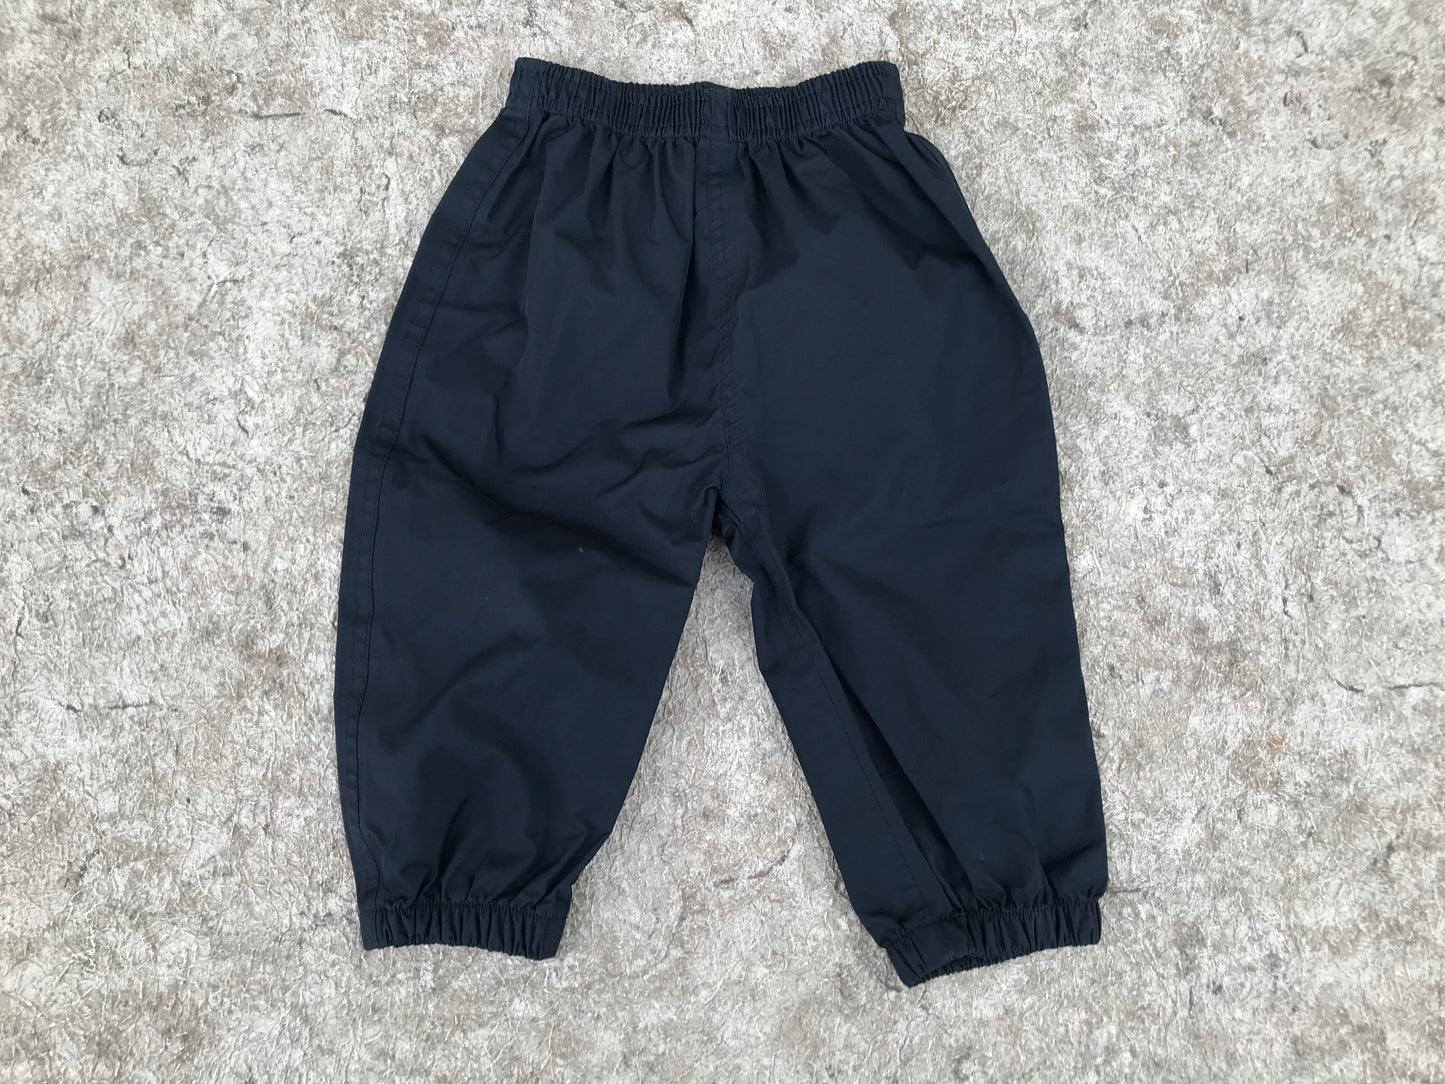 Rain Pants Child Size 12 Month CaliKids Rain Gear Marine Blue Excellent